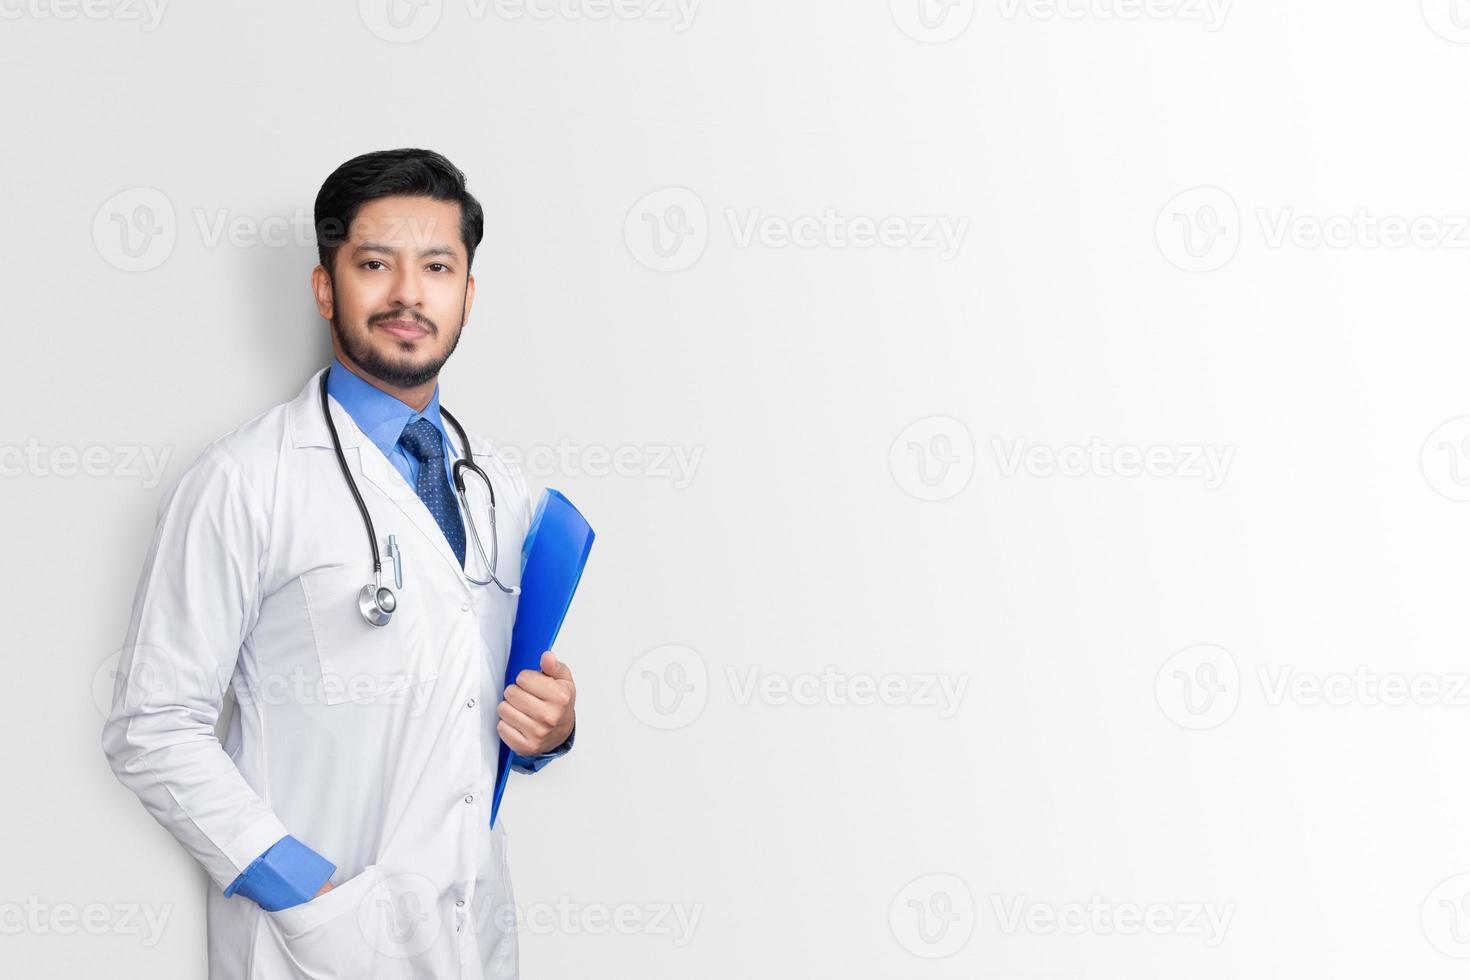 arts in laboratoriumjas met patiëntendossier of medische aantekeningen kijkend naar camera, geïsoleerd op een witte achtergrond foto